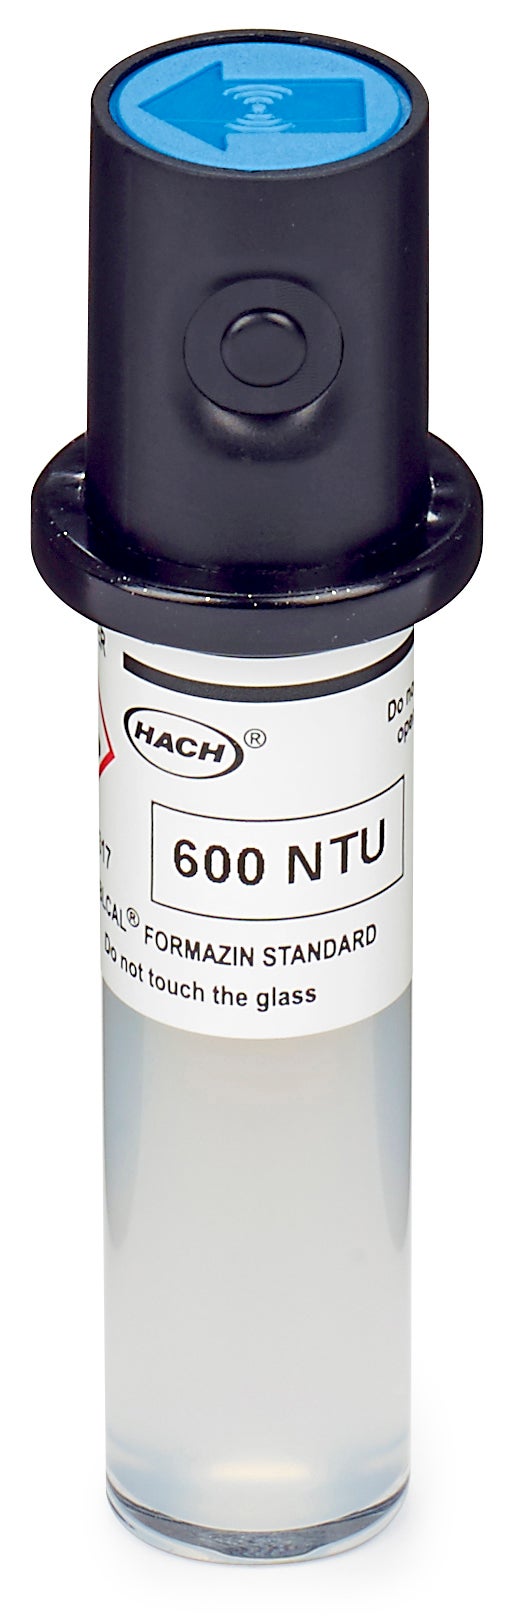 Kuweta do kalibracji Stablcal, 600 NTU, z identyfikatorem RFID do laserowych mierników mętności TU5200, TU5300sc i TU5400sc